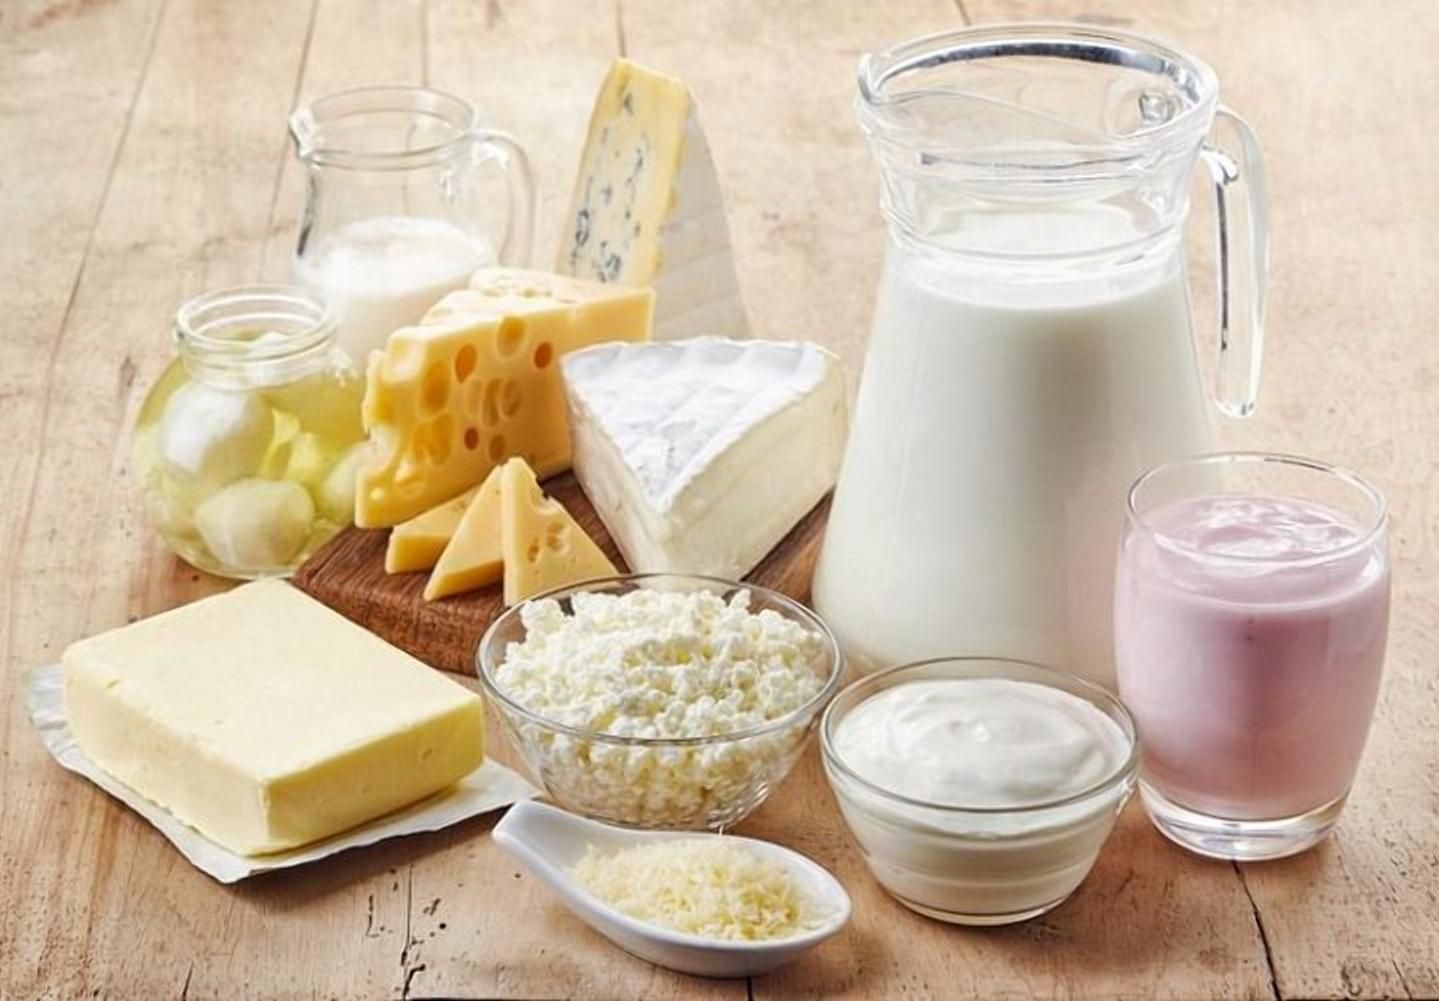 Україна почала виготовляти більше "молочки": як виріс показник - 9 октября 2021 - Агро